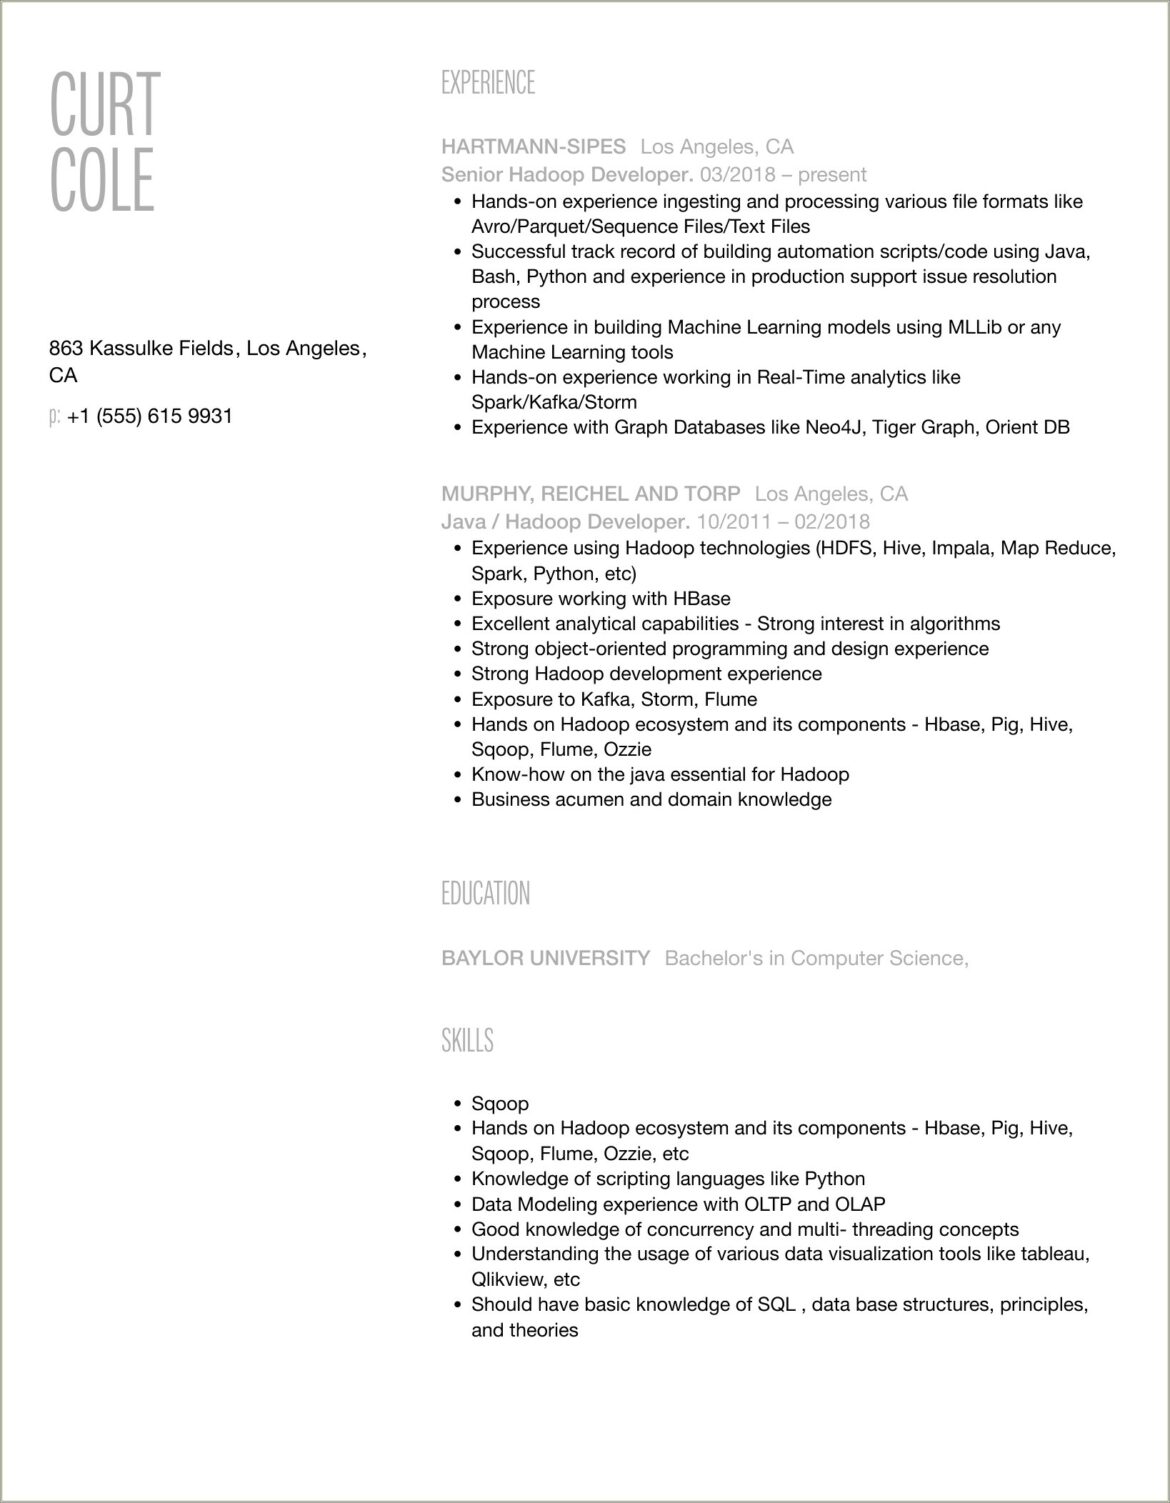 Sample Resume For Hadoop Developer With Asp.net